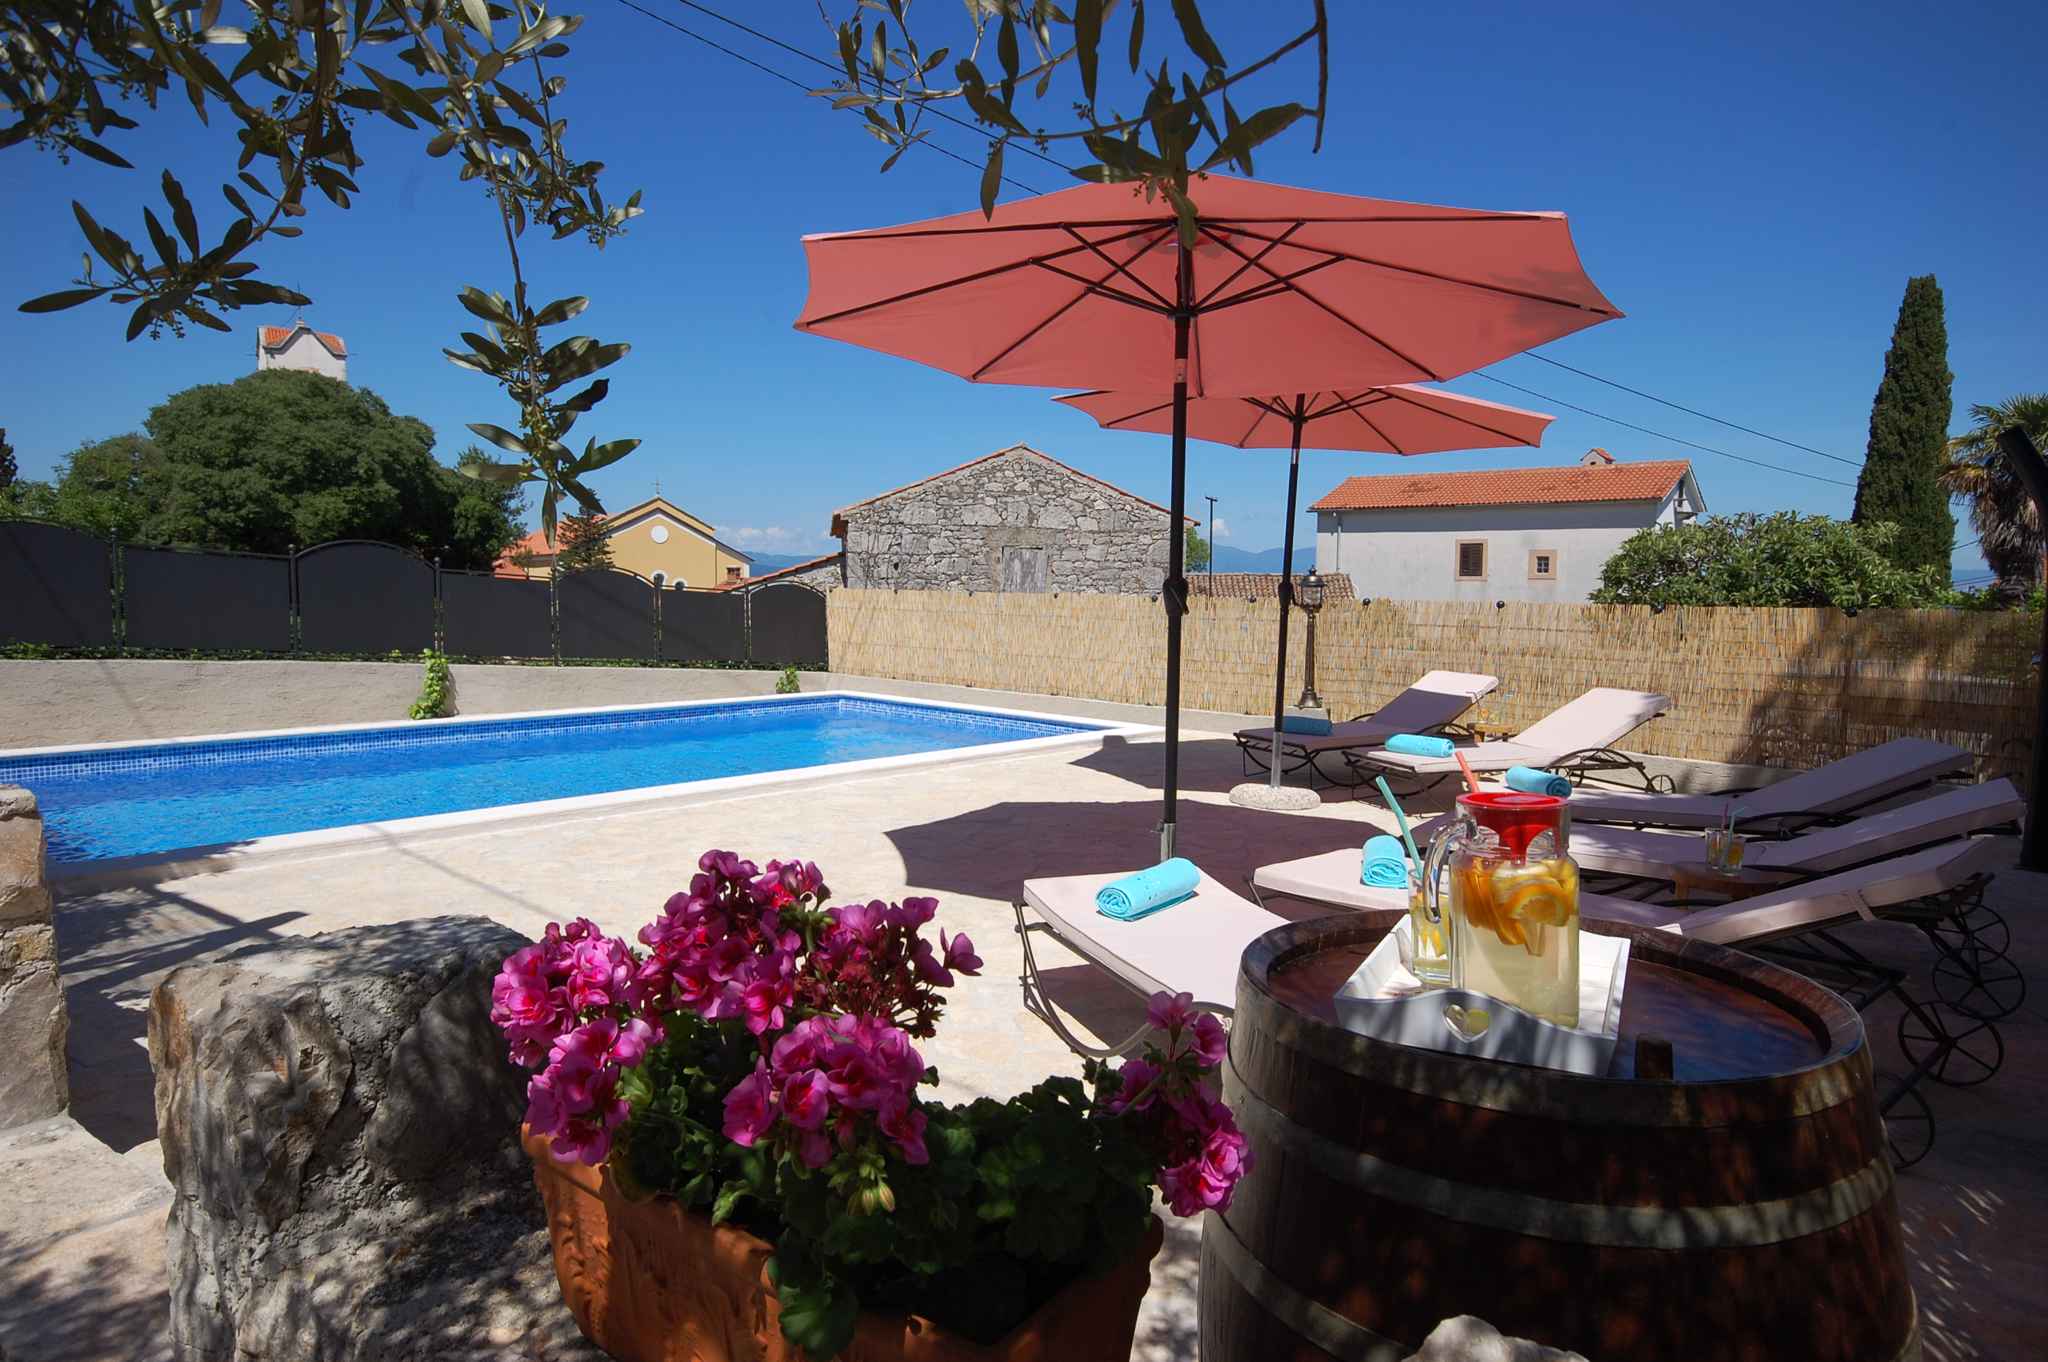 Villa mit Terrasse und Pool Ferienhaus in Kroatien